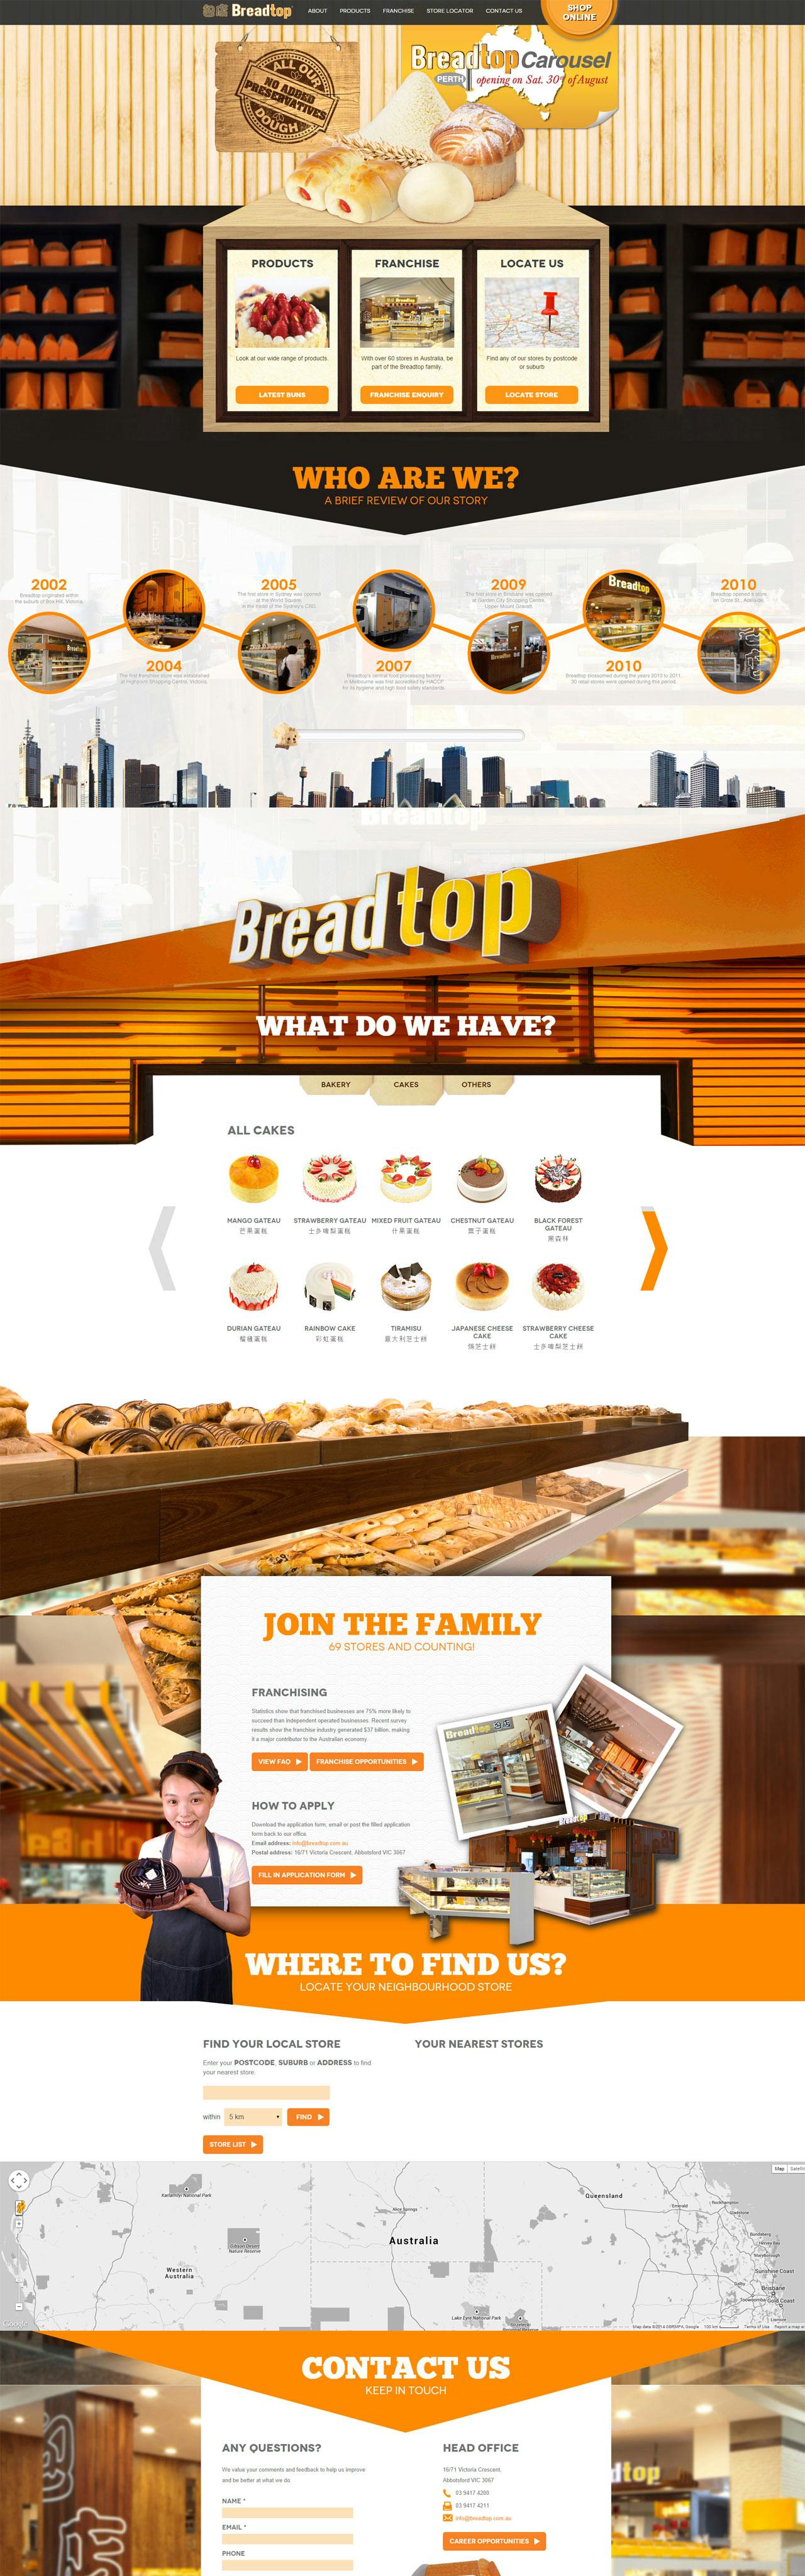 Breadtop Website Screenshot